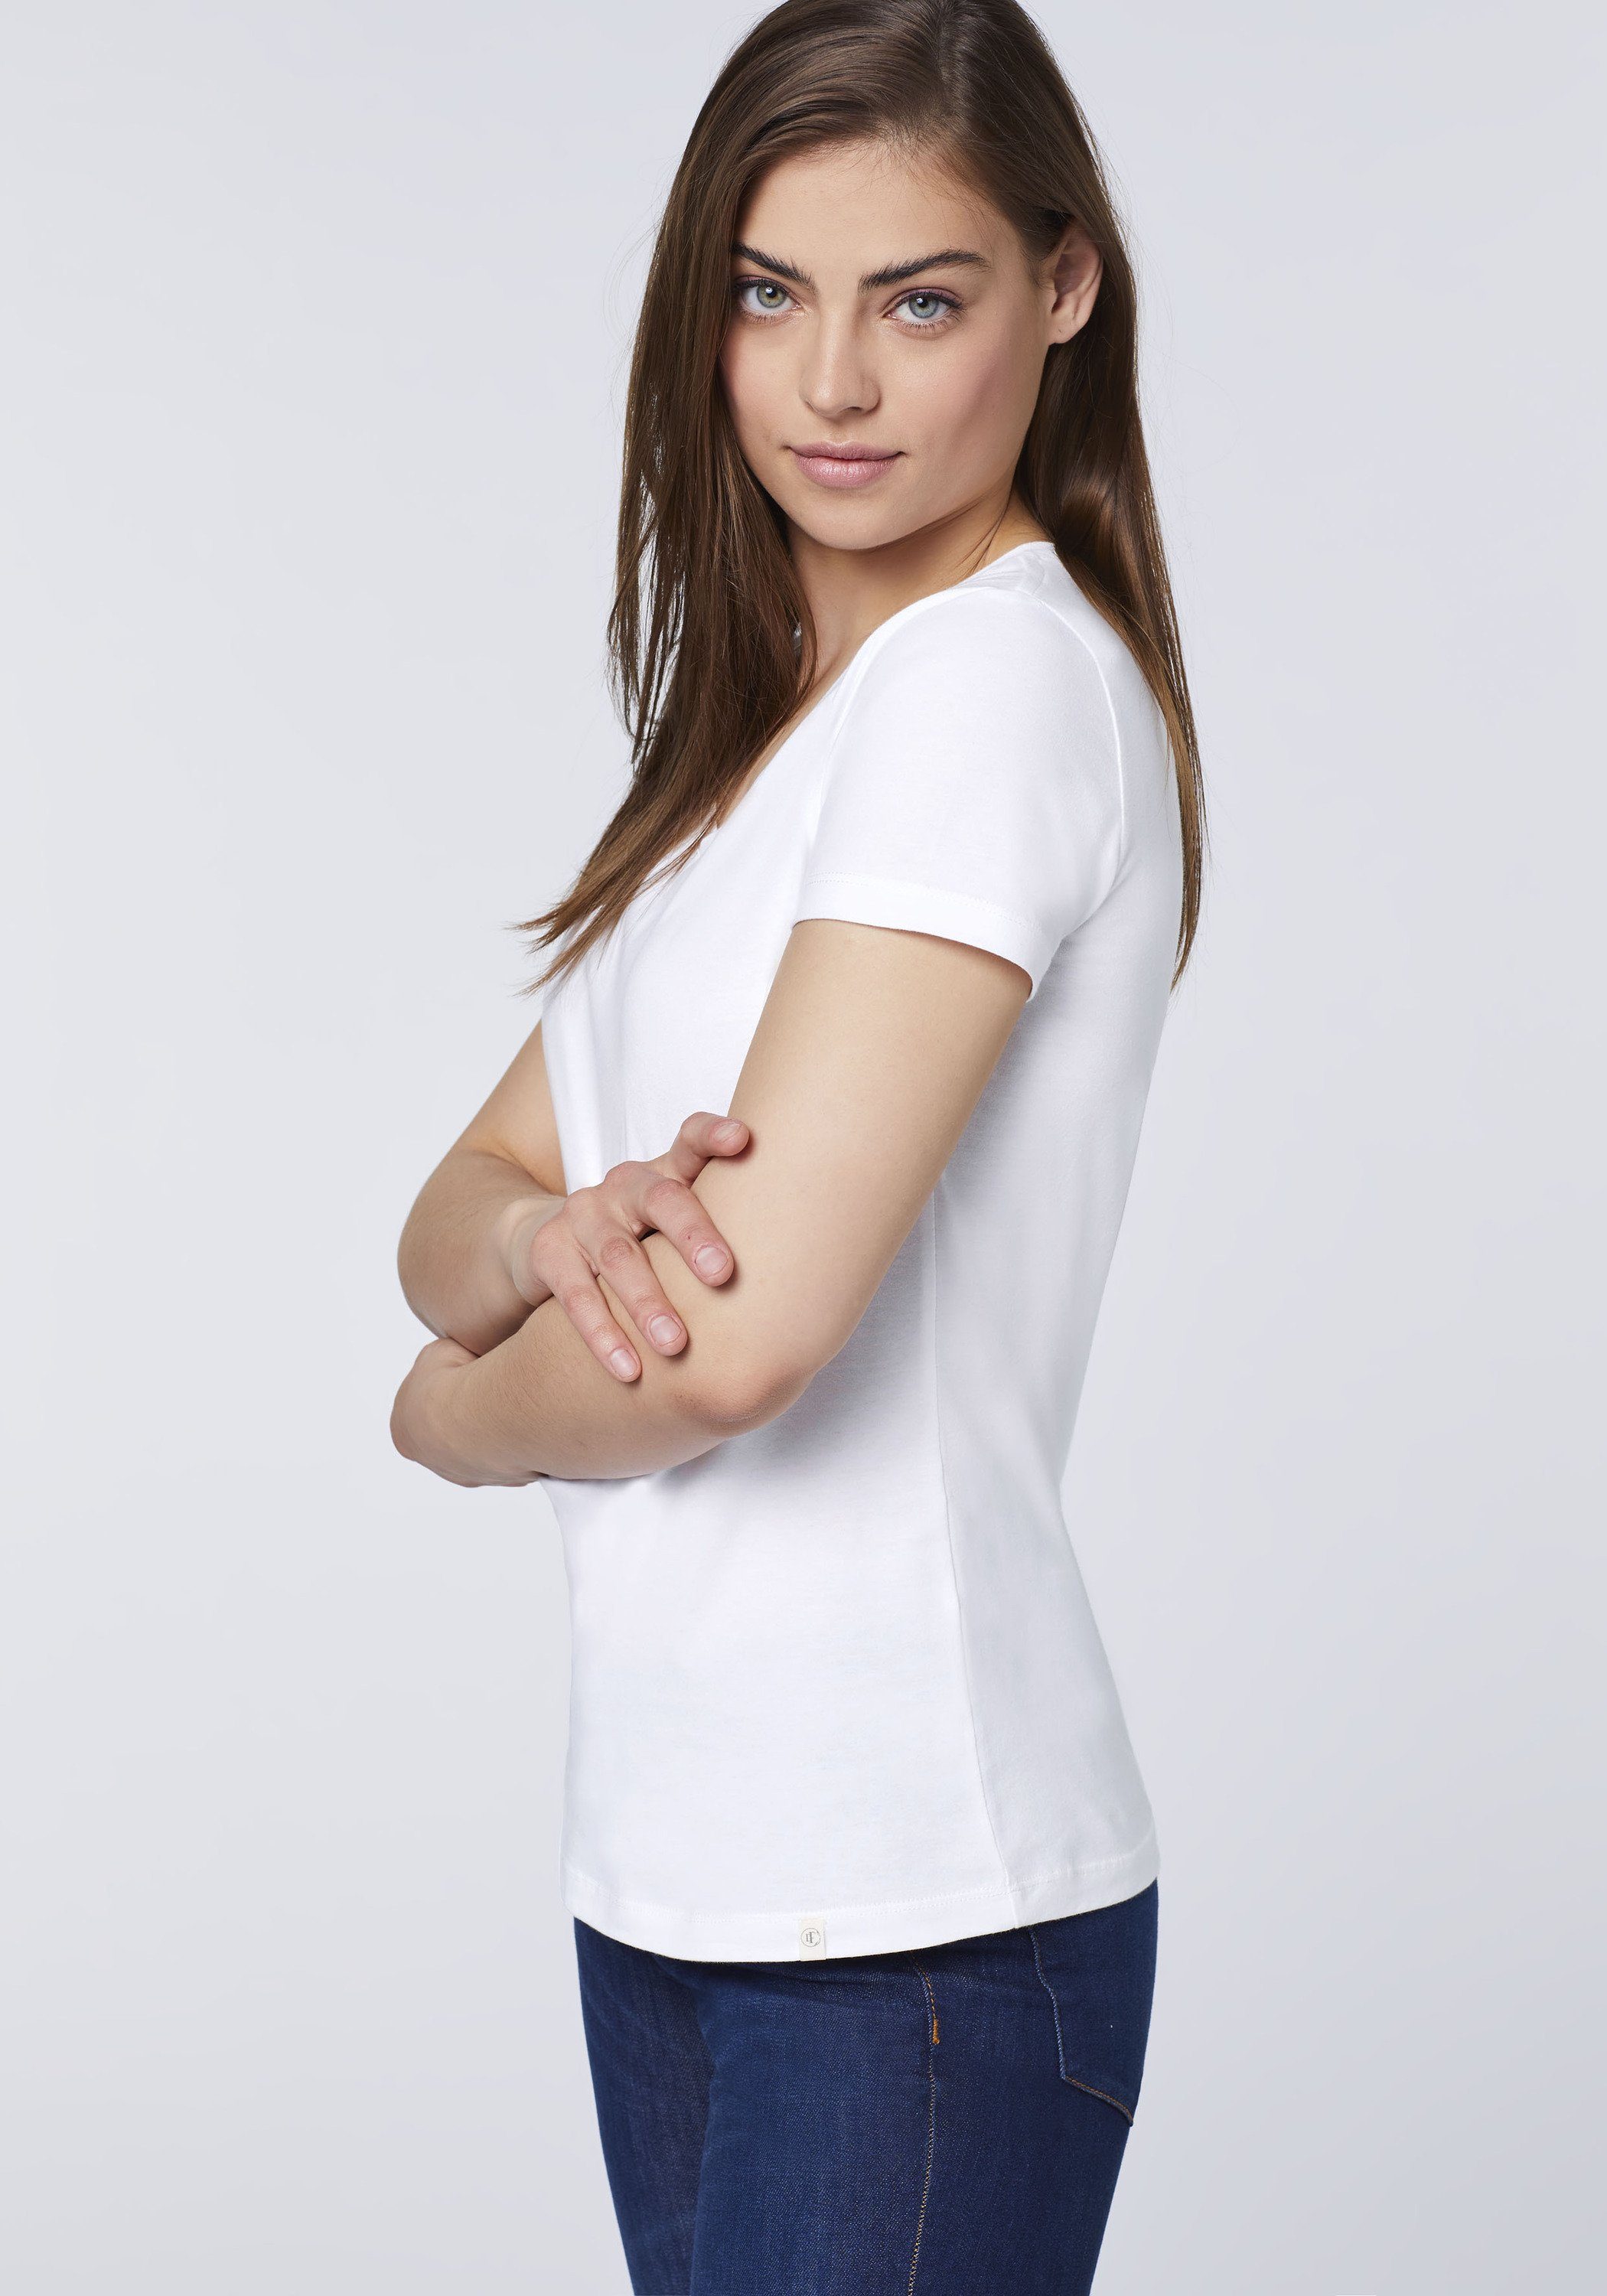 Detto Fatto T-Shirt im femininen 10 V-Neck-Design White